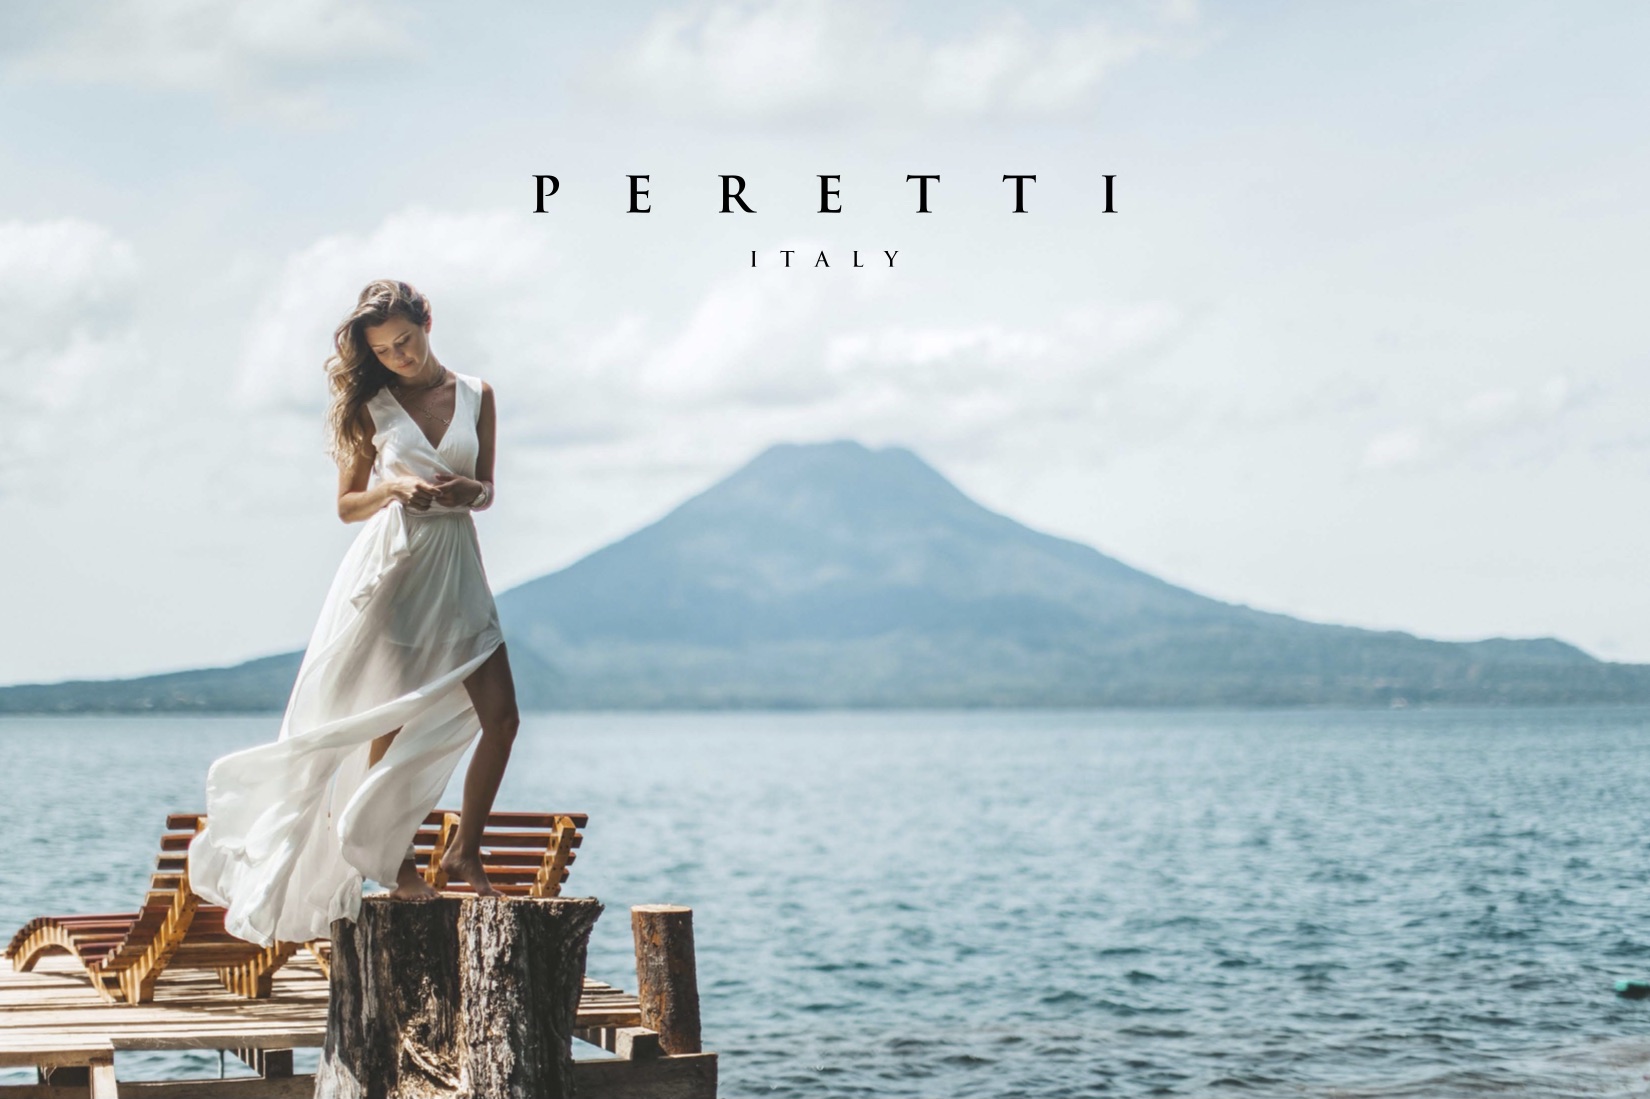 Peretti Italy